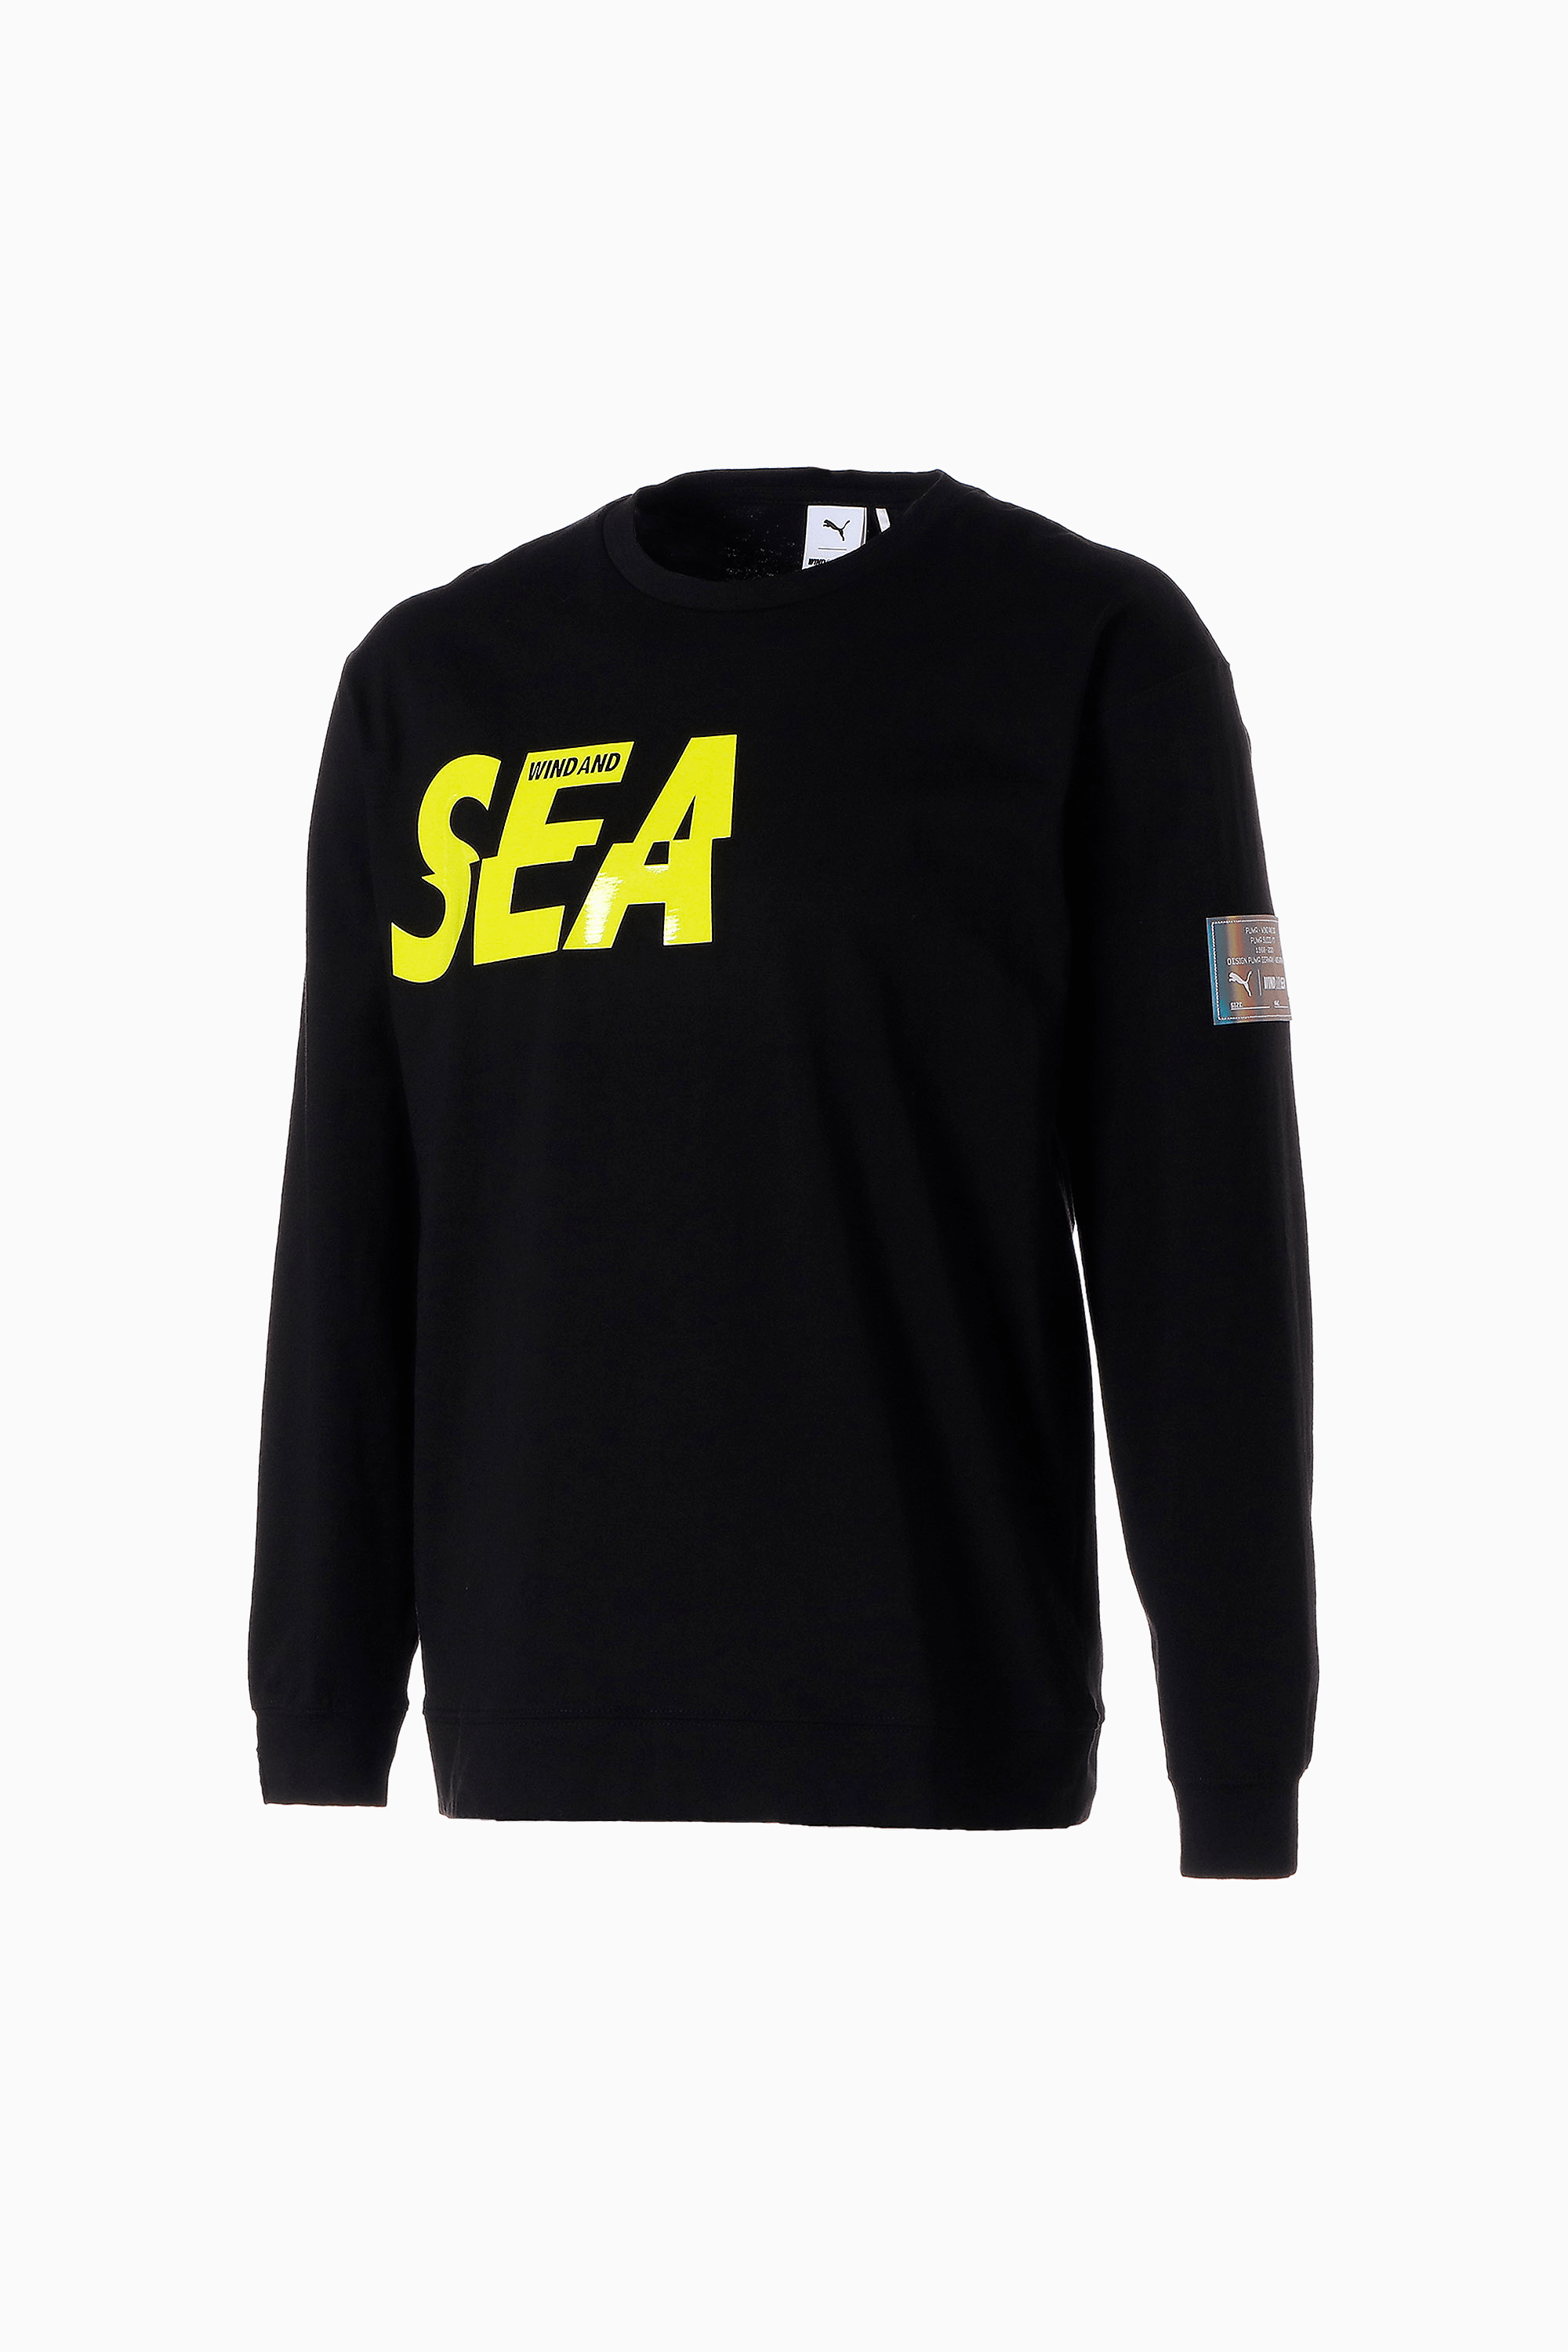 PUMA × WIND AND SEA Tシャツ Lサイズユニセックス